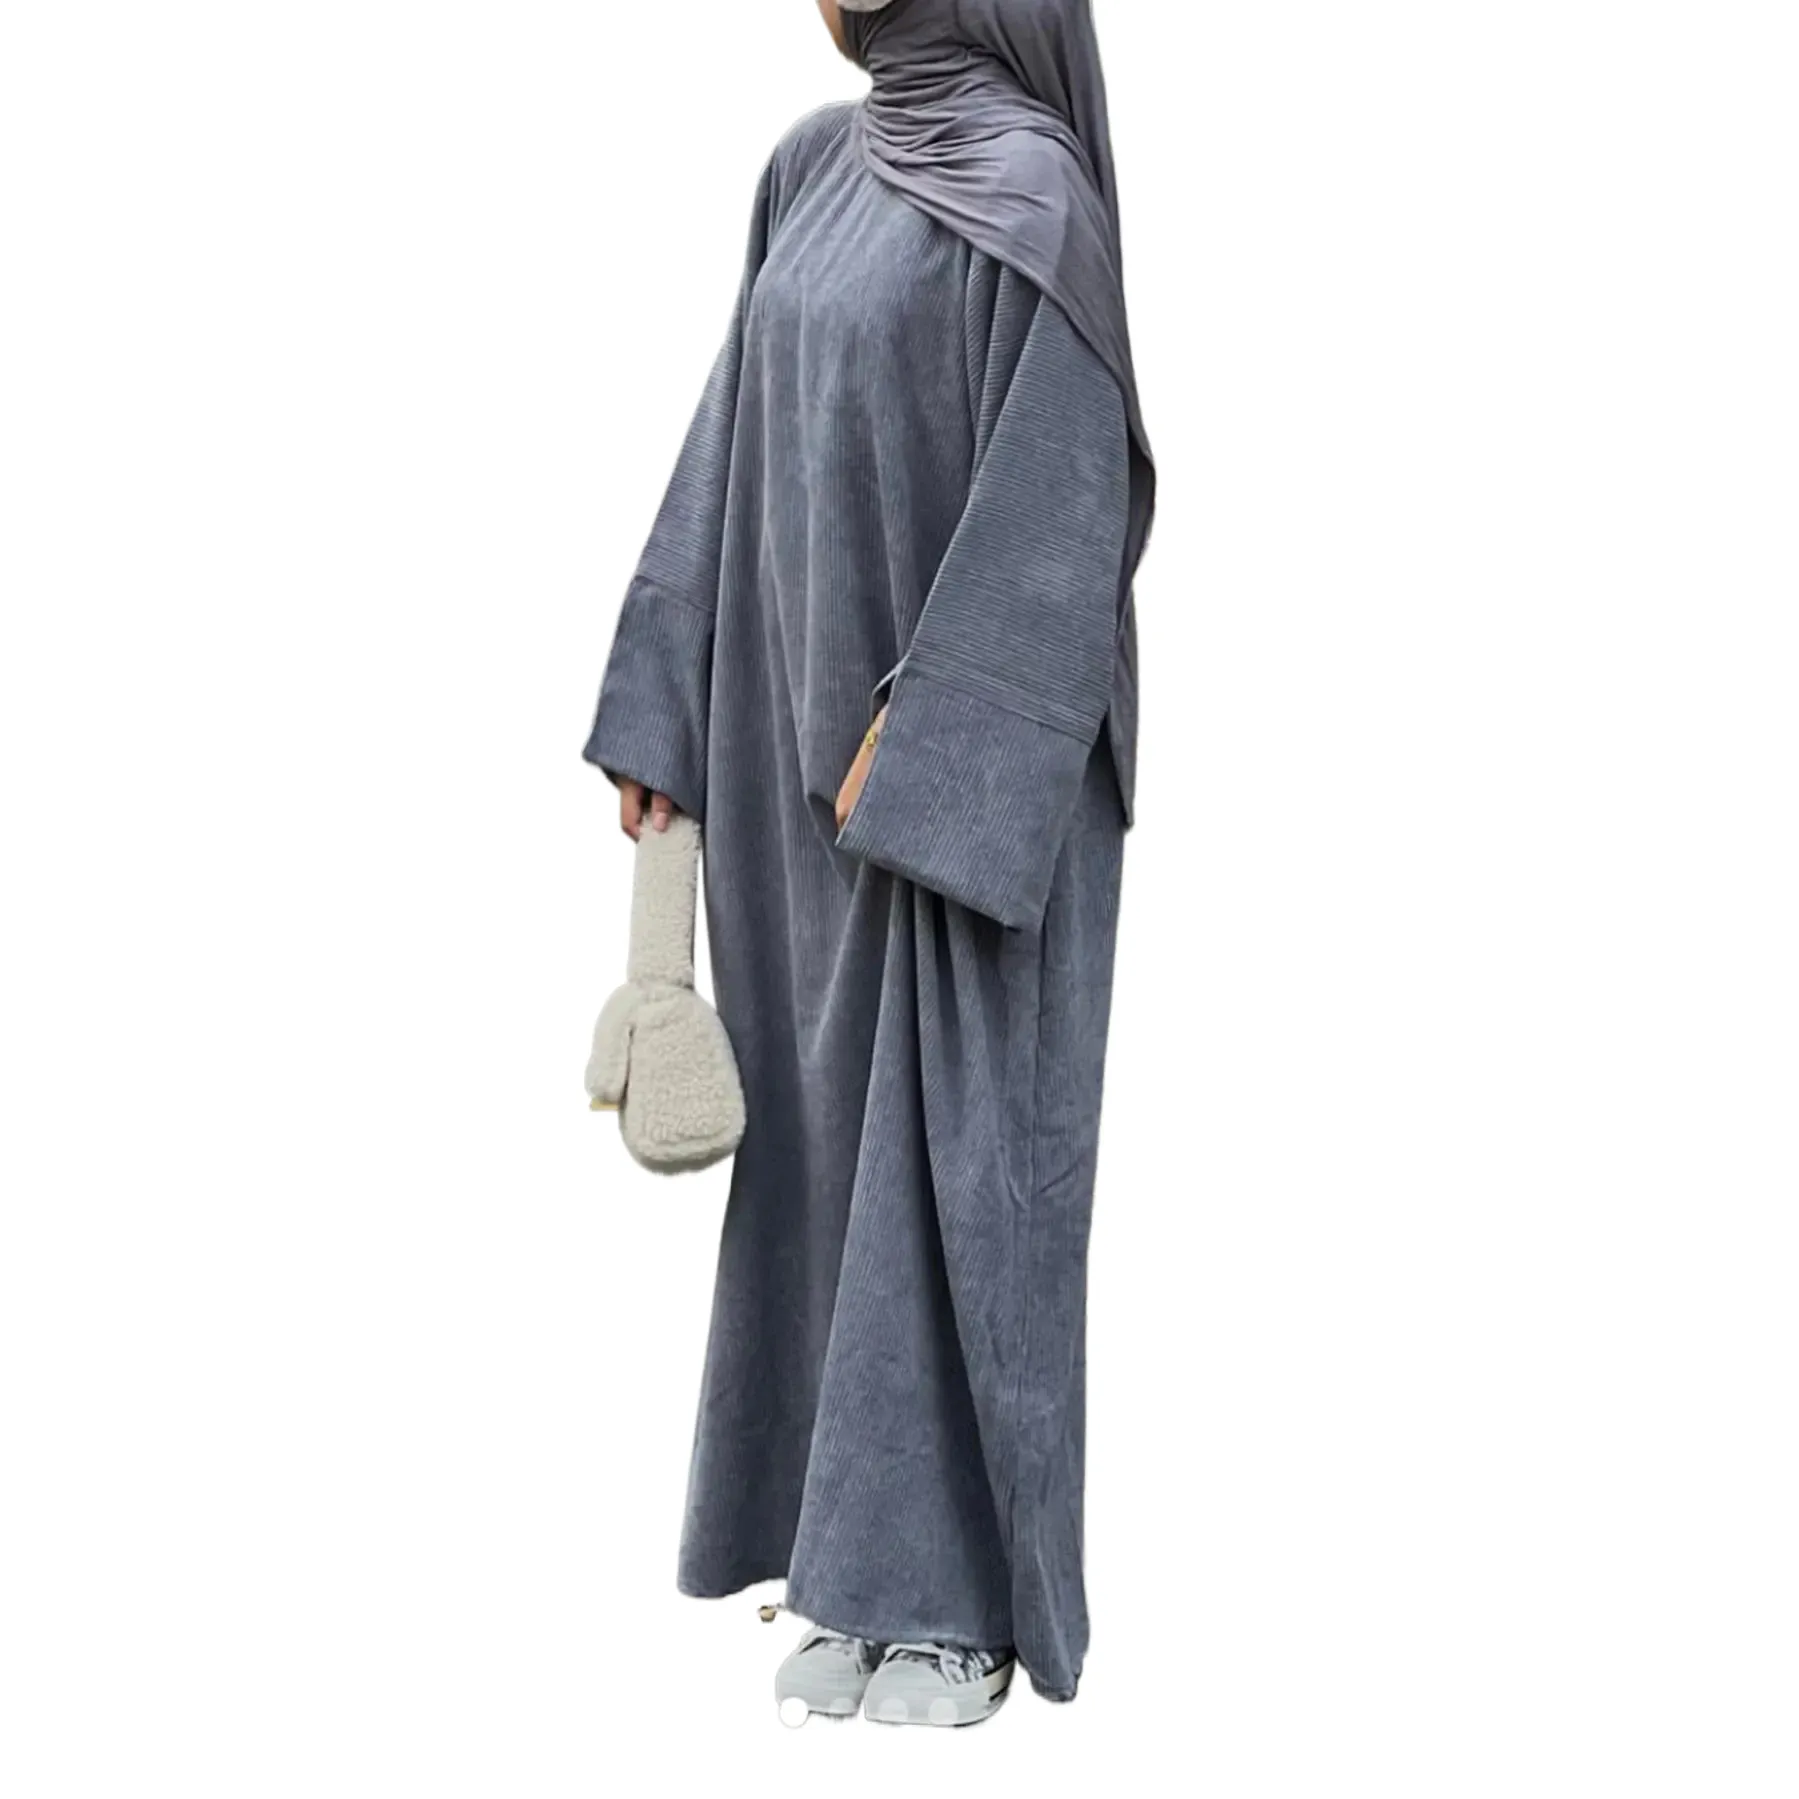 كارديجان تركي عادي عباية دبي فاخرة محتشمة ثوب نسائي سميك كوردوري للشتاء عباية للمرأة المسلمة